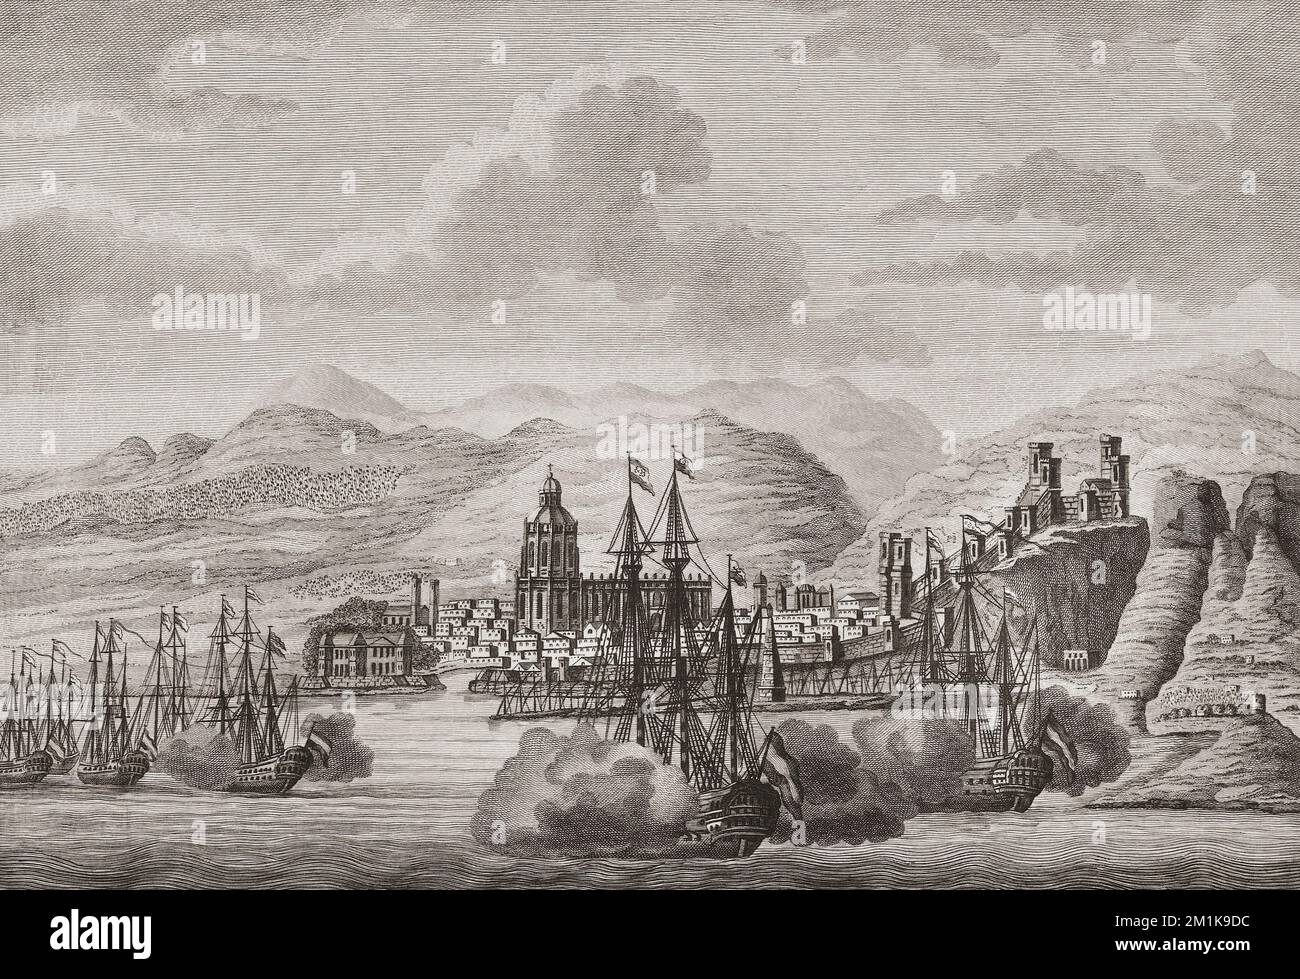 La flotta olandese al largo di Malaga, Spagna nel 1784, per celebrare il compleanno di Carlo III/Carlos III, re di Spagna. Le navi olandesi salutano. Da una stampa di Antonio Suntach. Foto Stock